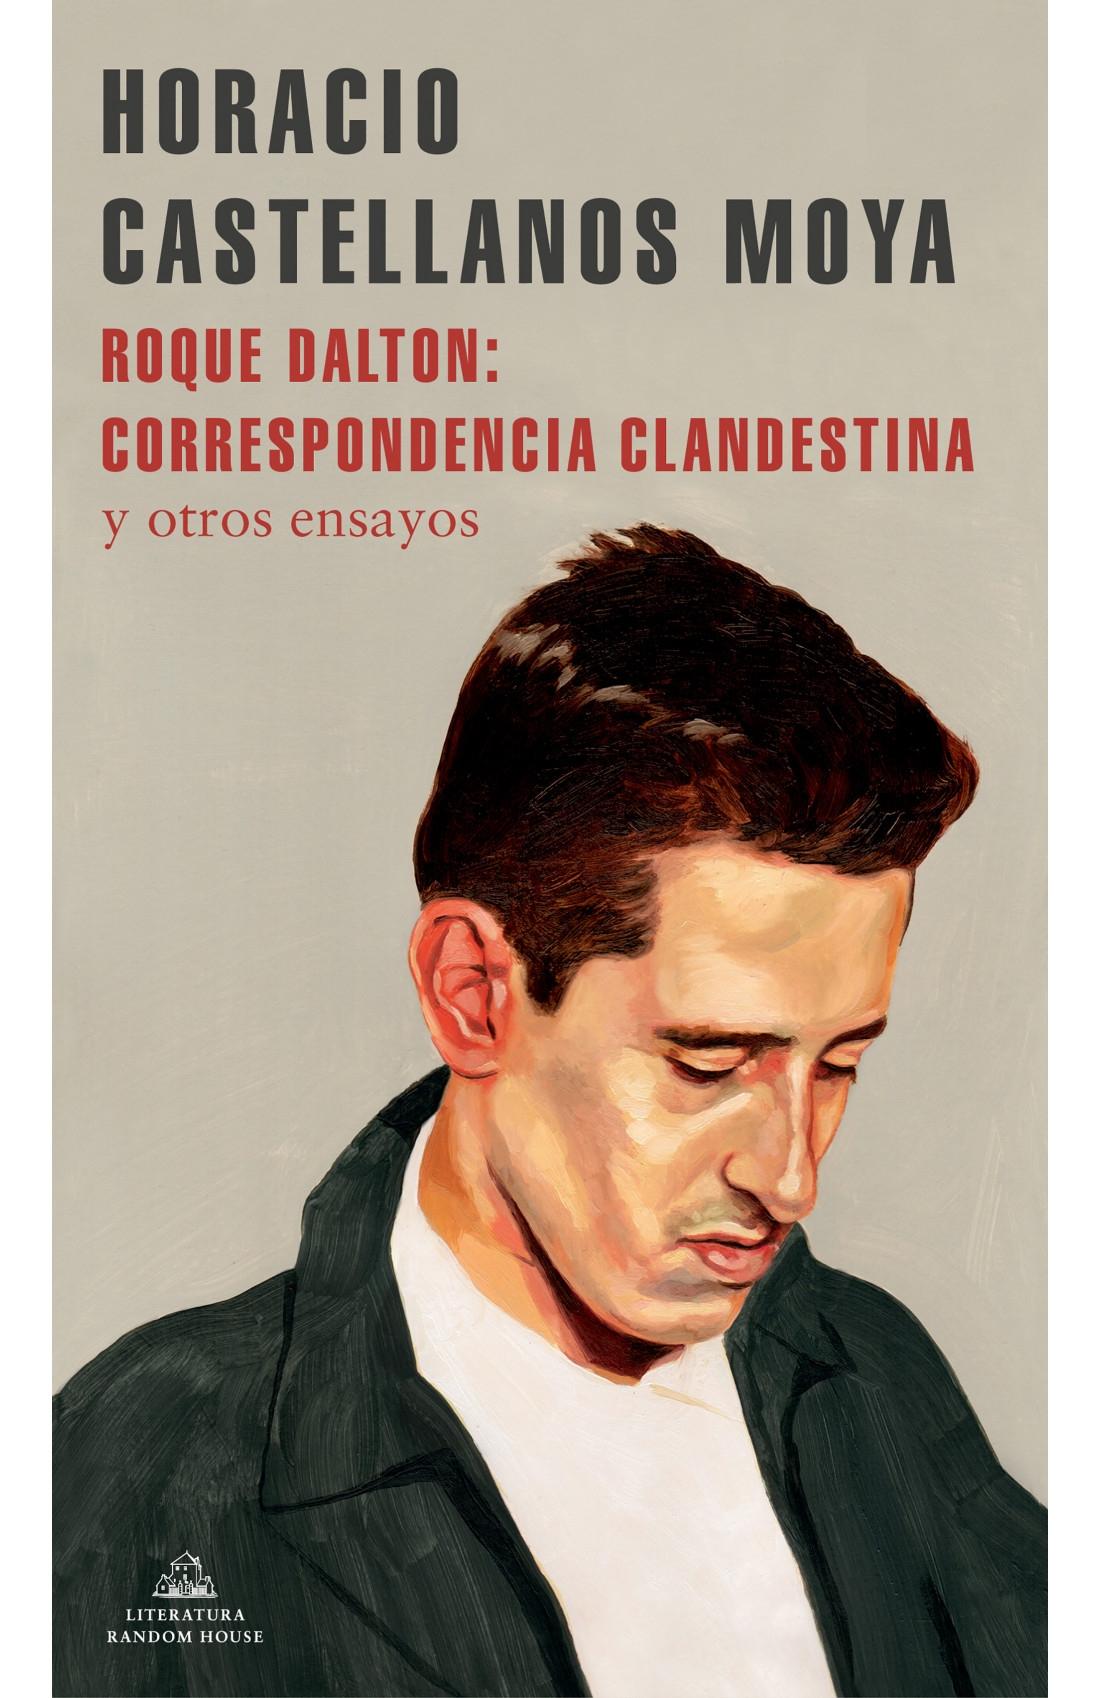 Roque Dalton: Correspondencia Clandestina "Y Otros Ensayos" "Y Otros Ensayos". 